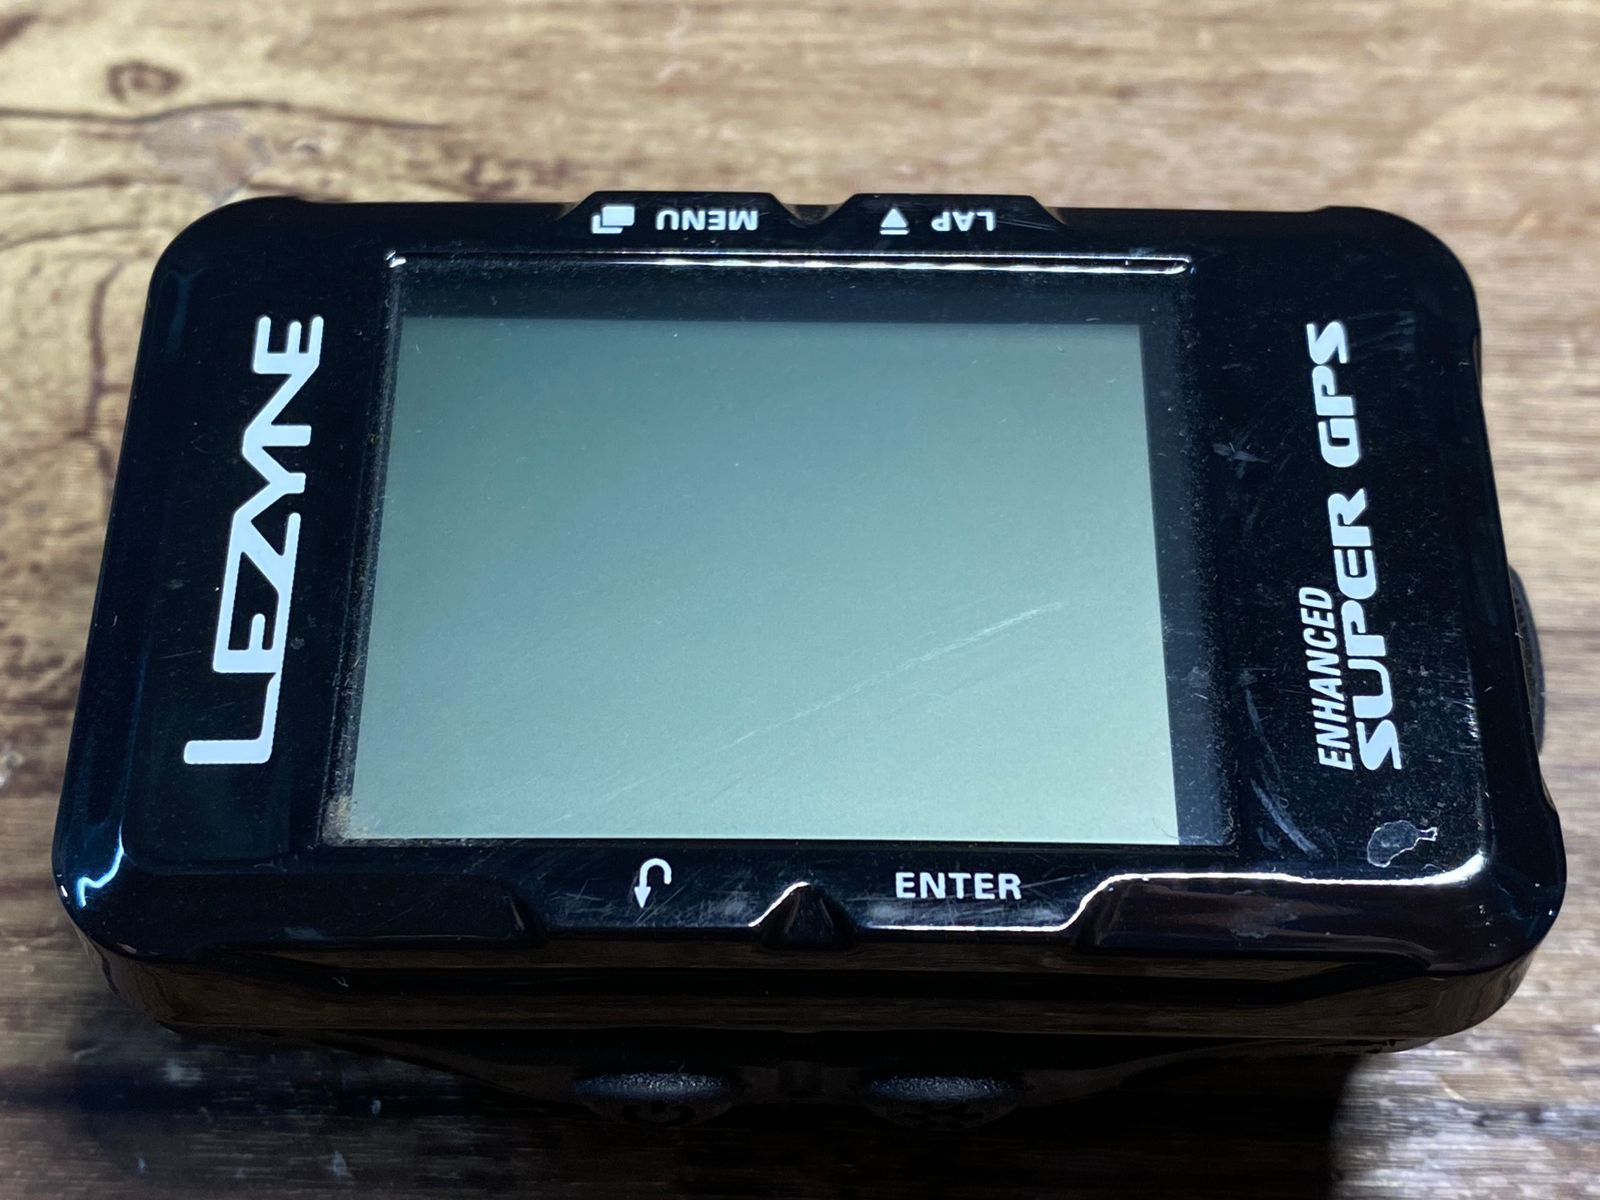 FS322 レザイン LEZYNE SUPER GPS サイクルコンピューター スピード ケイデンスセンサー付属 動作確認済